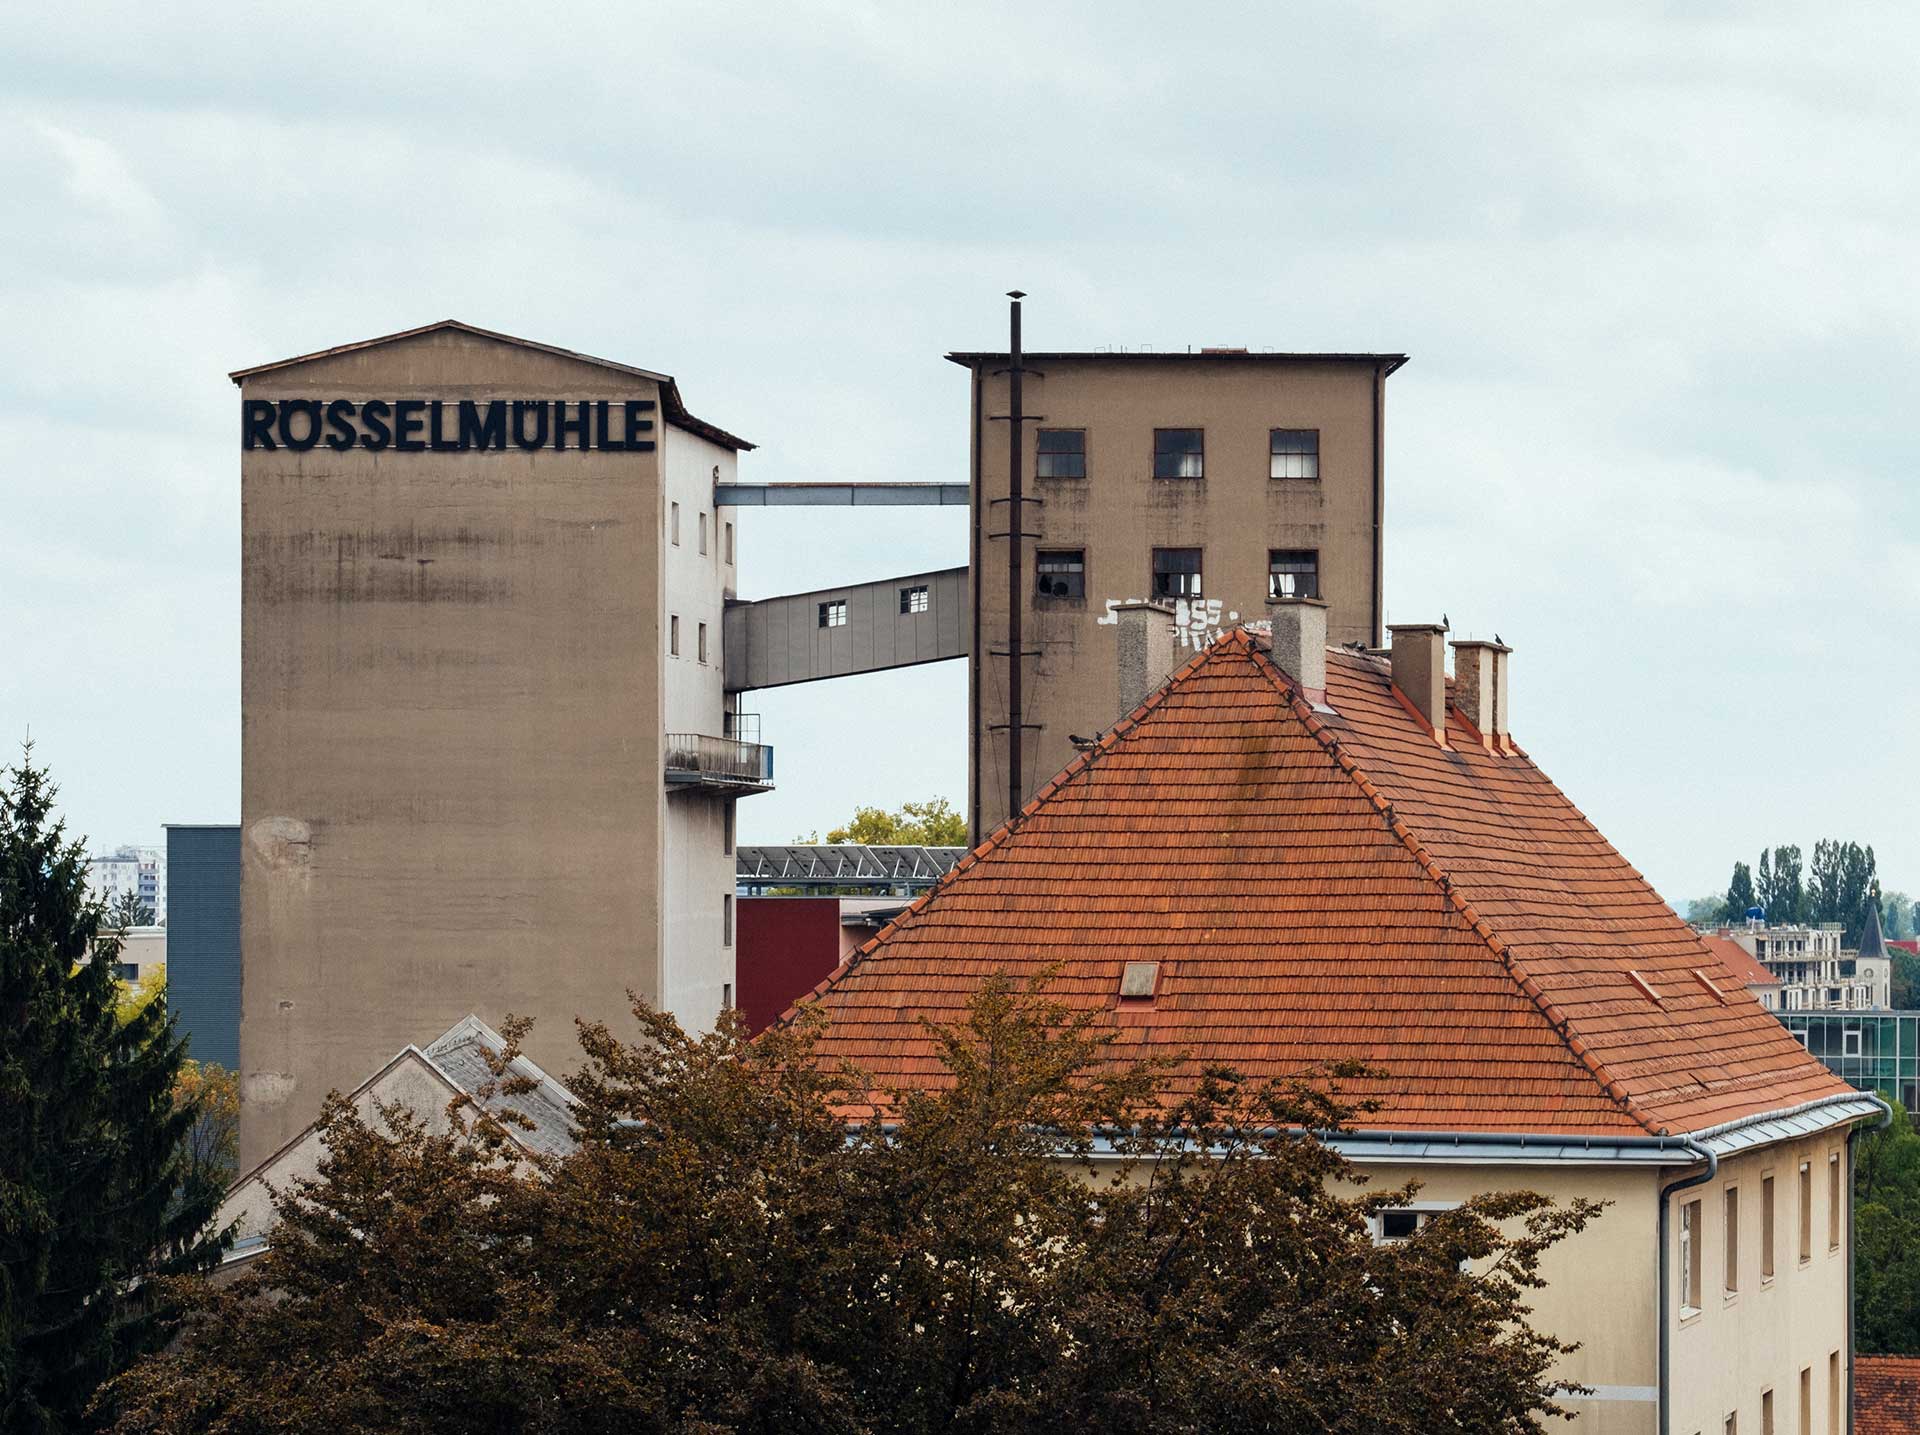 Rösselmühle ©Lena Prehal